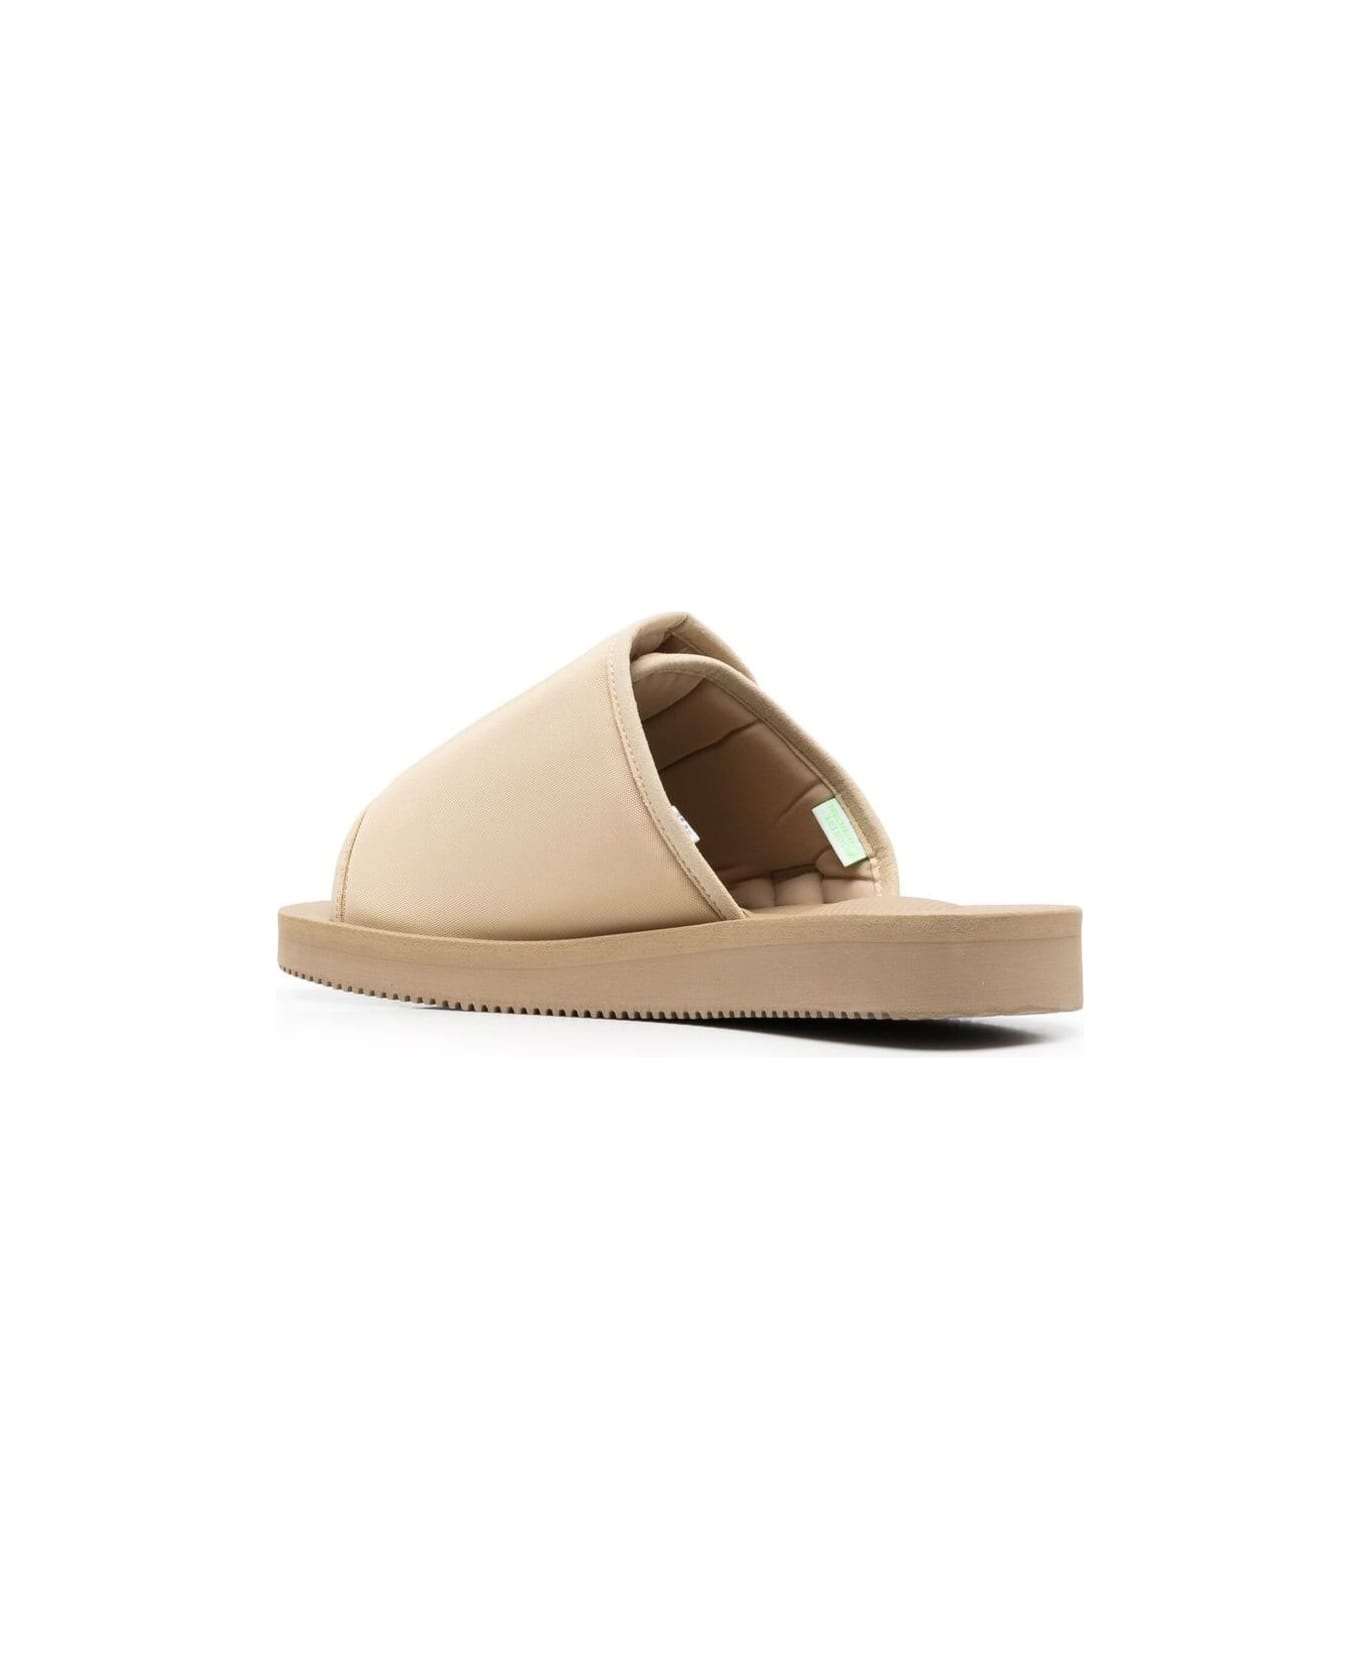 SUICOKE 'kaw-cab' Beige Sandals With Velcro Fastening In Nylon Woman Suicoke - Beige サンダル